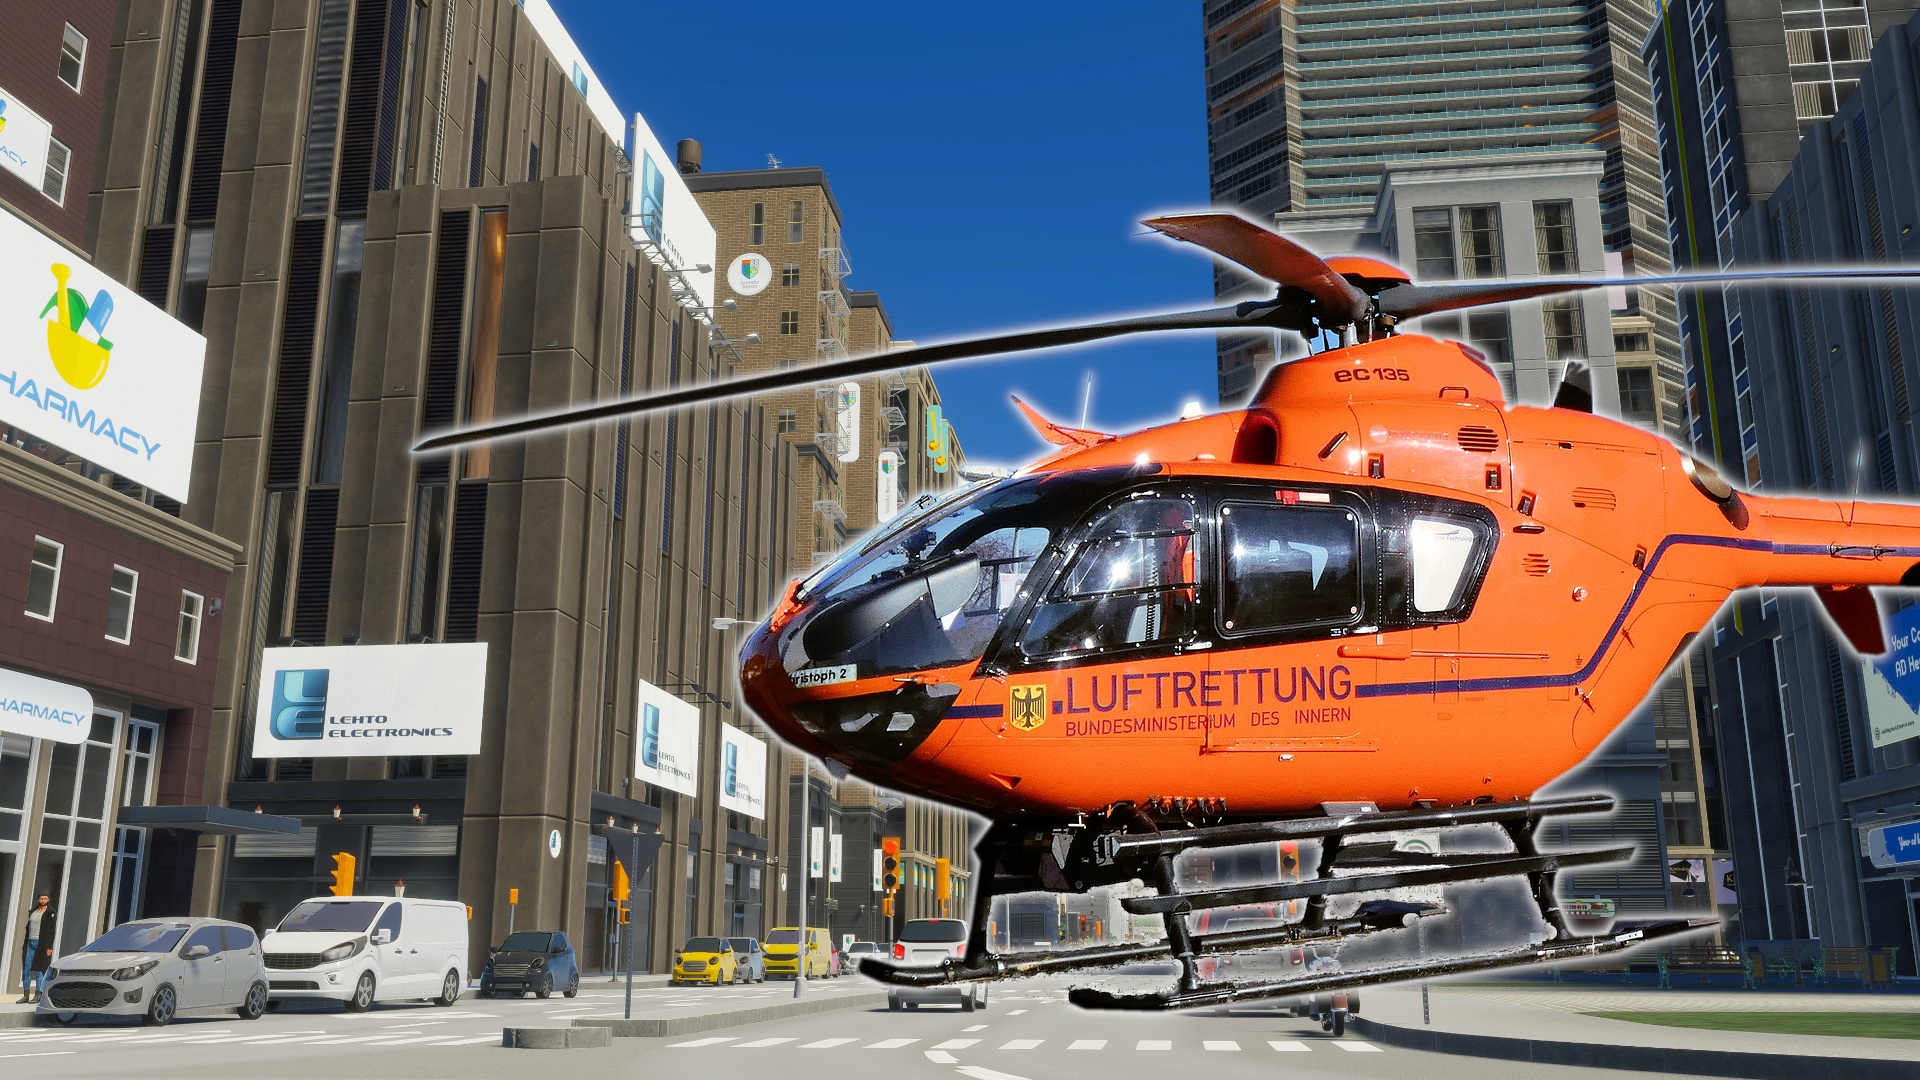 #Cities: Skylines 2: Achtung, aktuell verkleidet sich ein Helikopter als Passant!